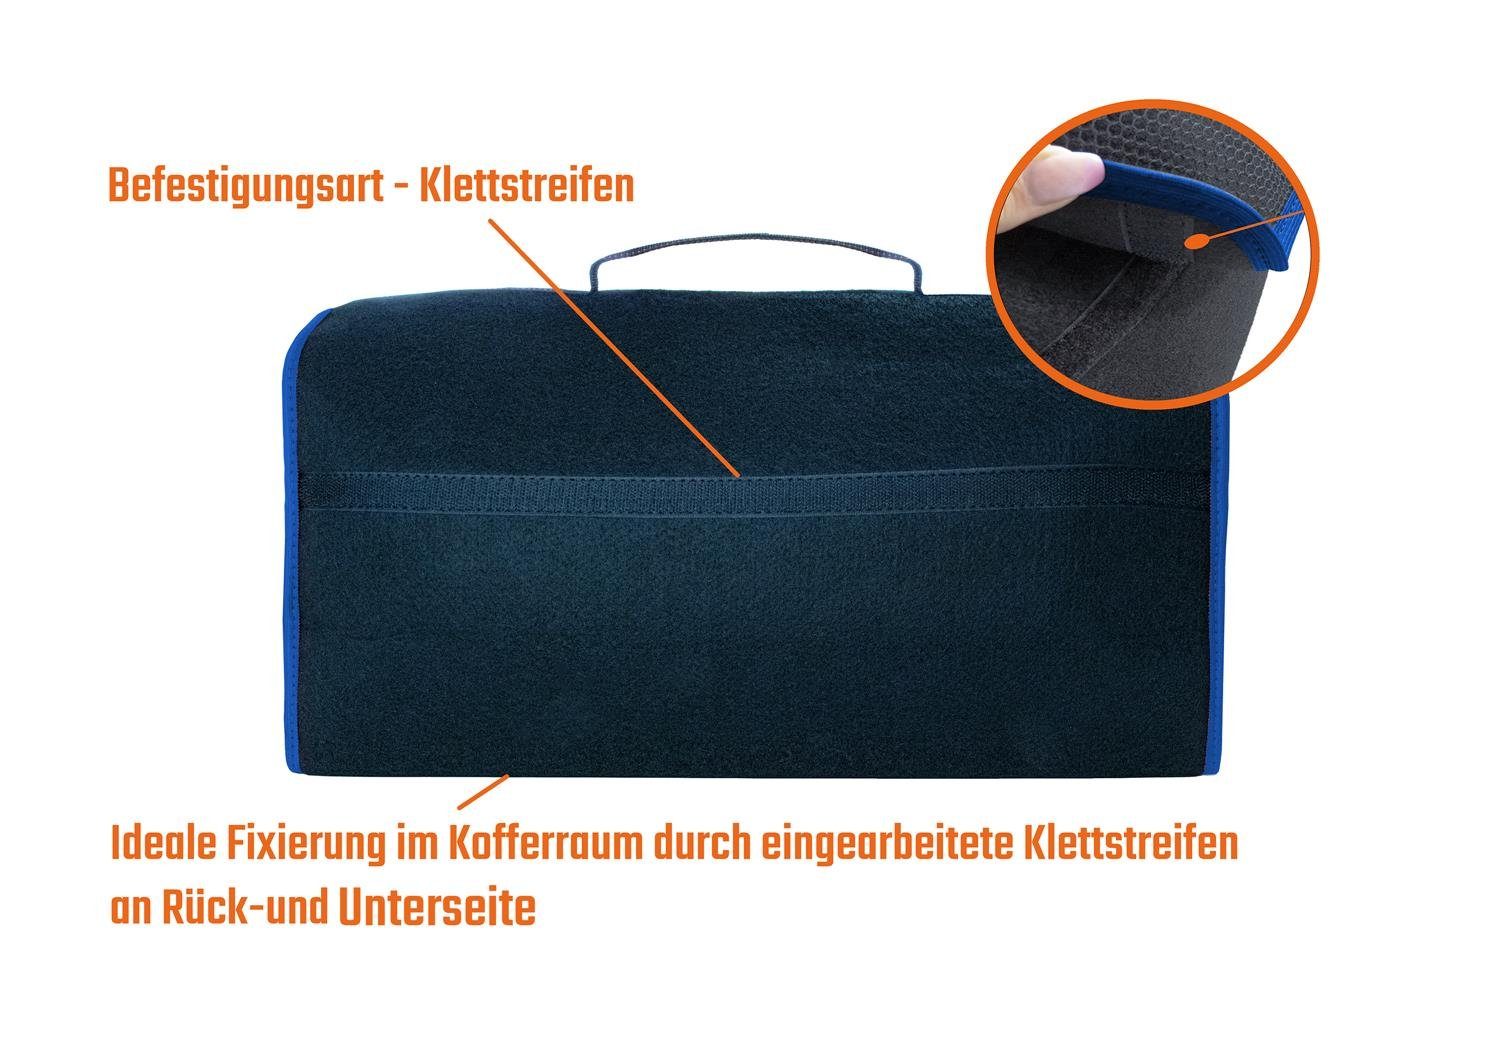 L & P Car Kofferraumtasche mit farbigem in blauem Saum Design mit Rand Schwarz Organizer Auto schwarz